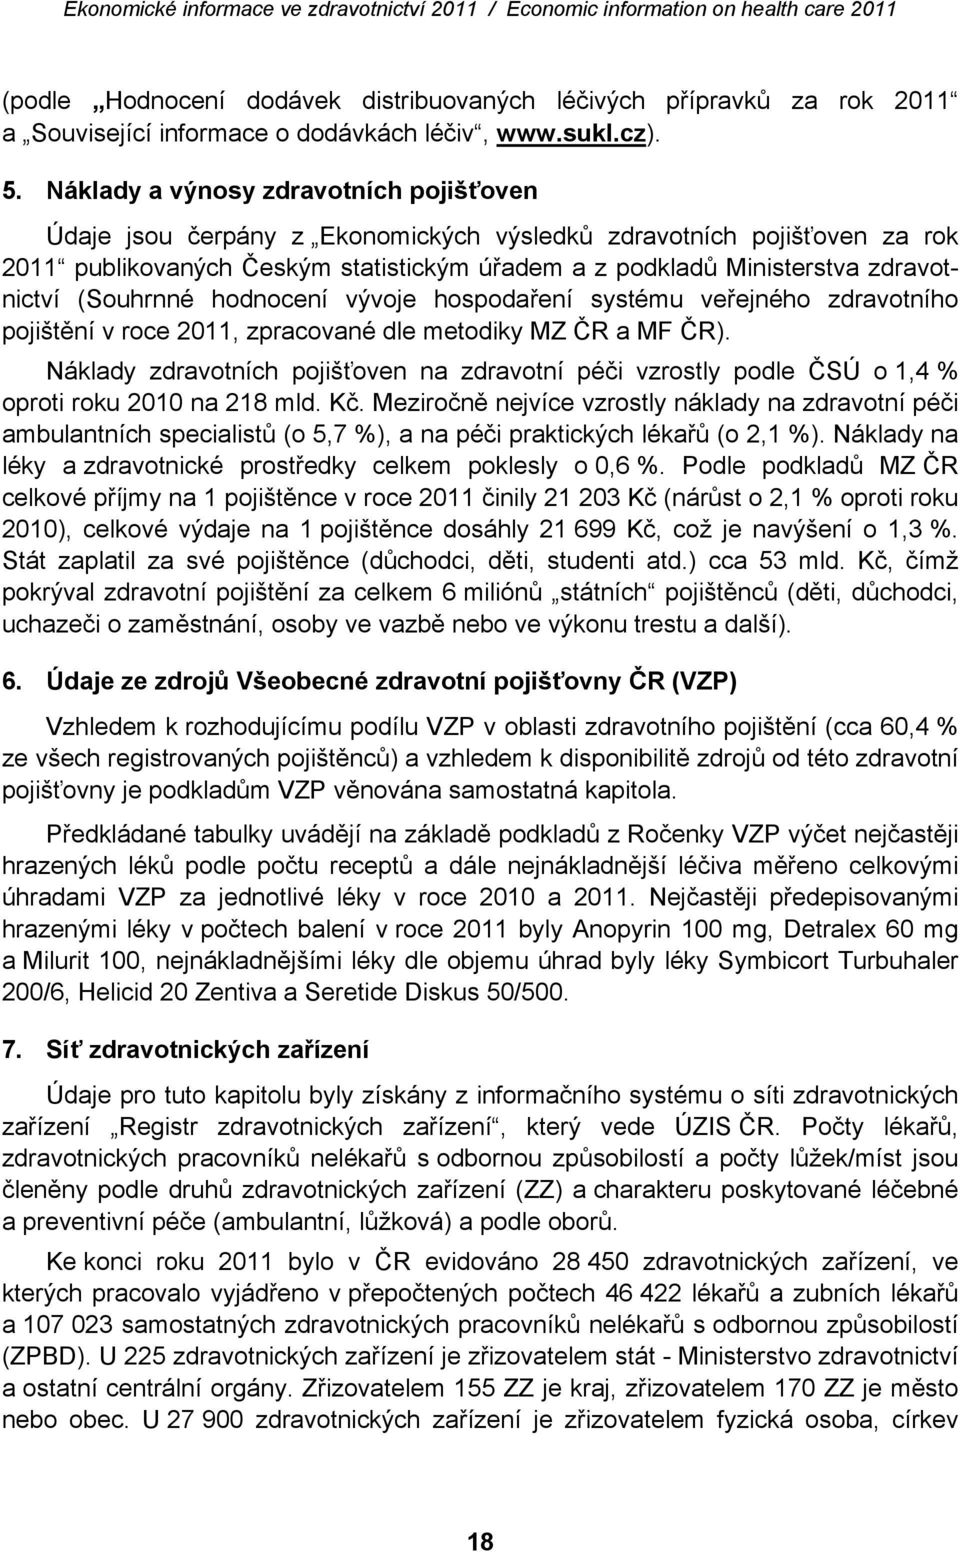 (Souhrnné hodnocení vývoje hospodaření systému veřejného zdravotního pojištění v roce 2011, zpracované dle metodiky MZ ČR a MF ČR).